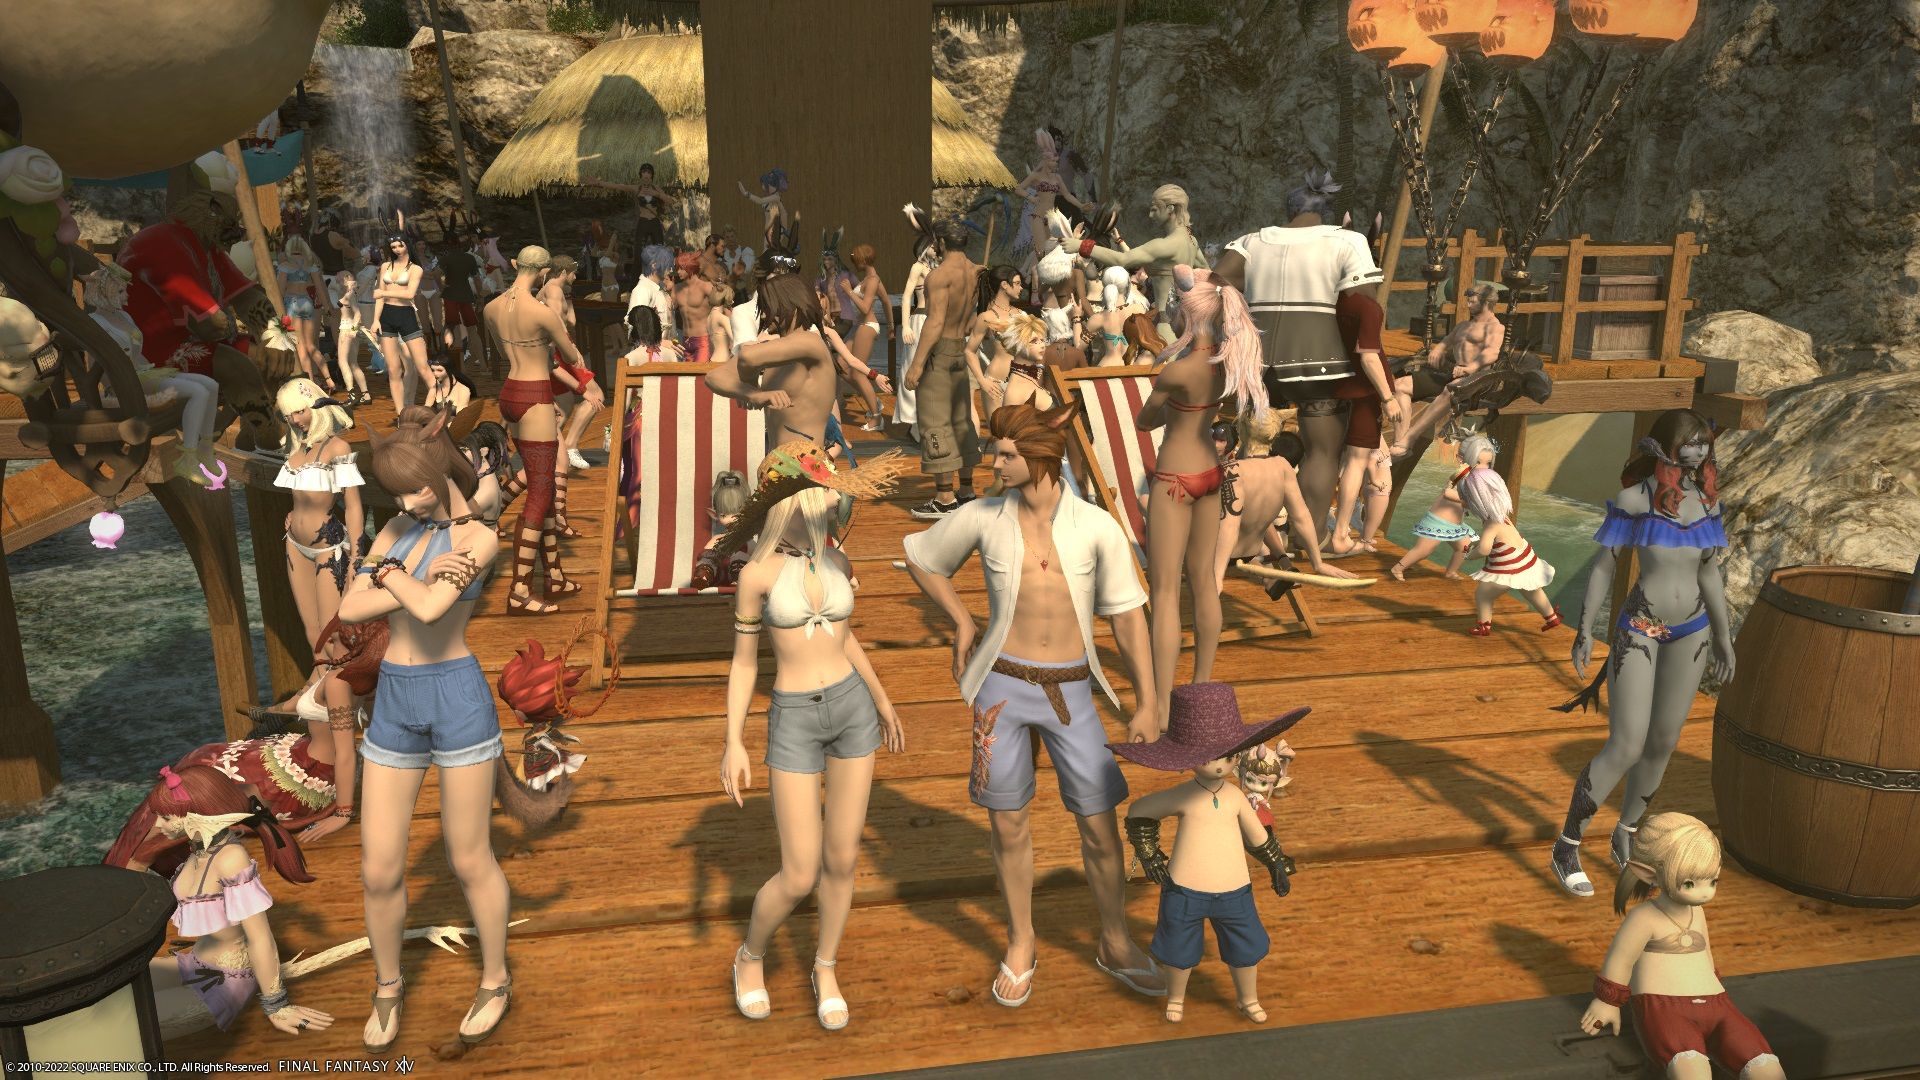 Final Fantasy 14 beach party in Costa del Sol